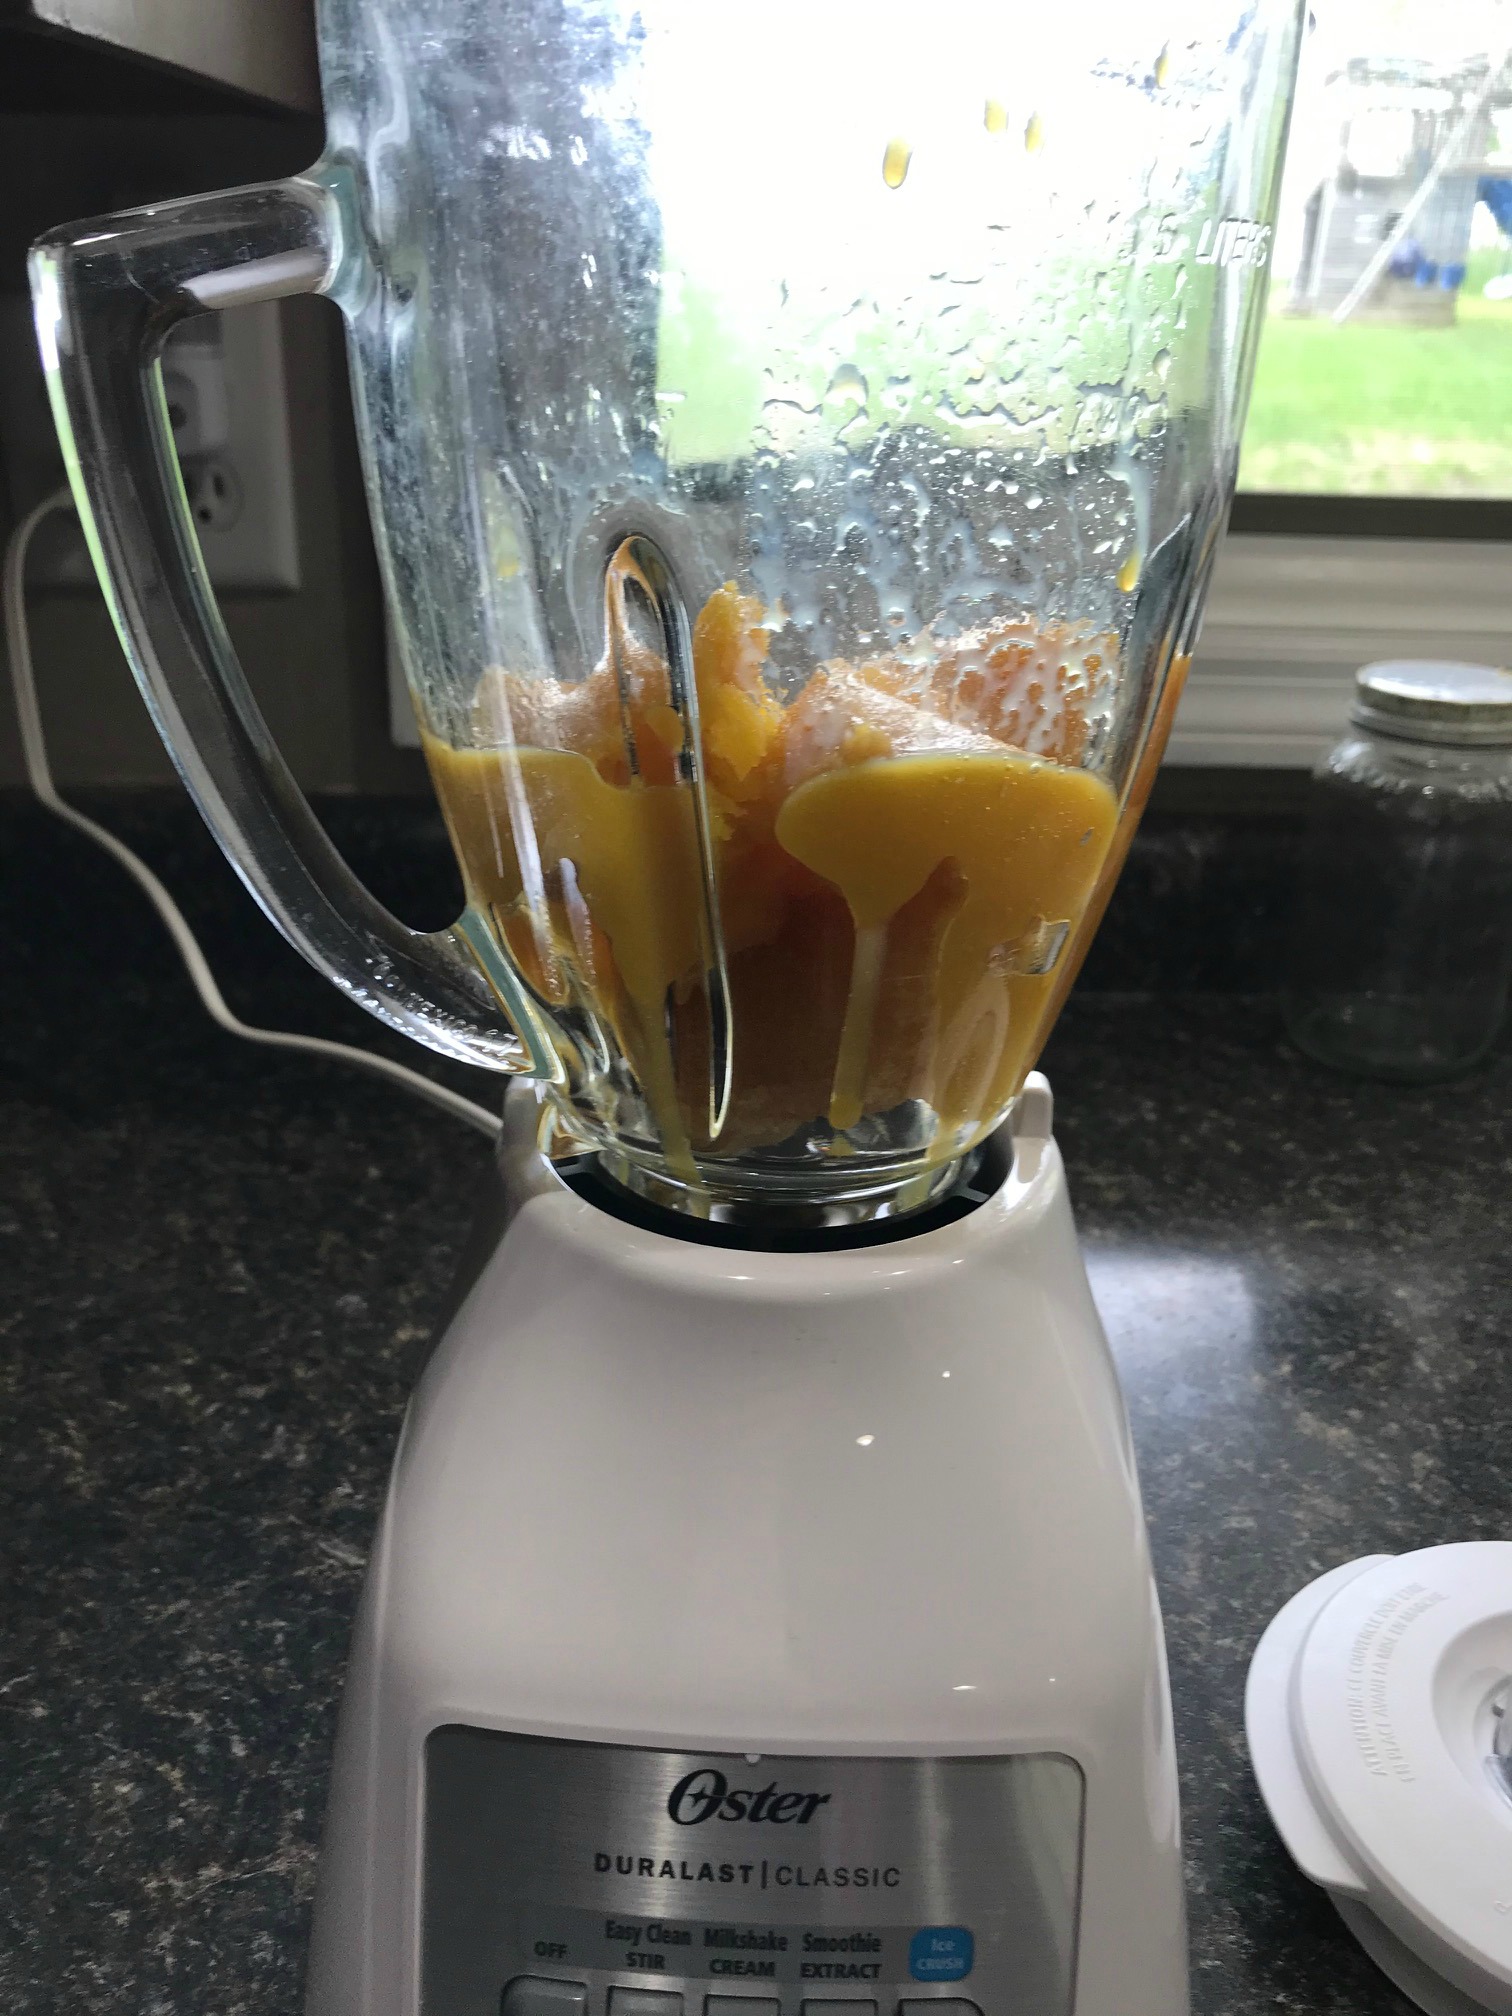 Frozen orange juice in a blender on a countertop